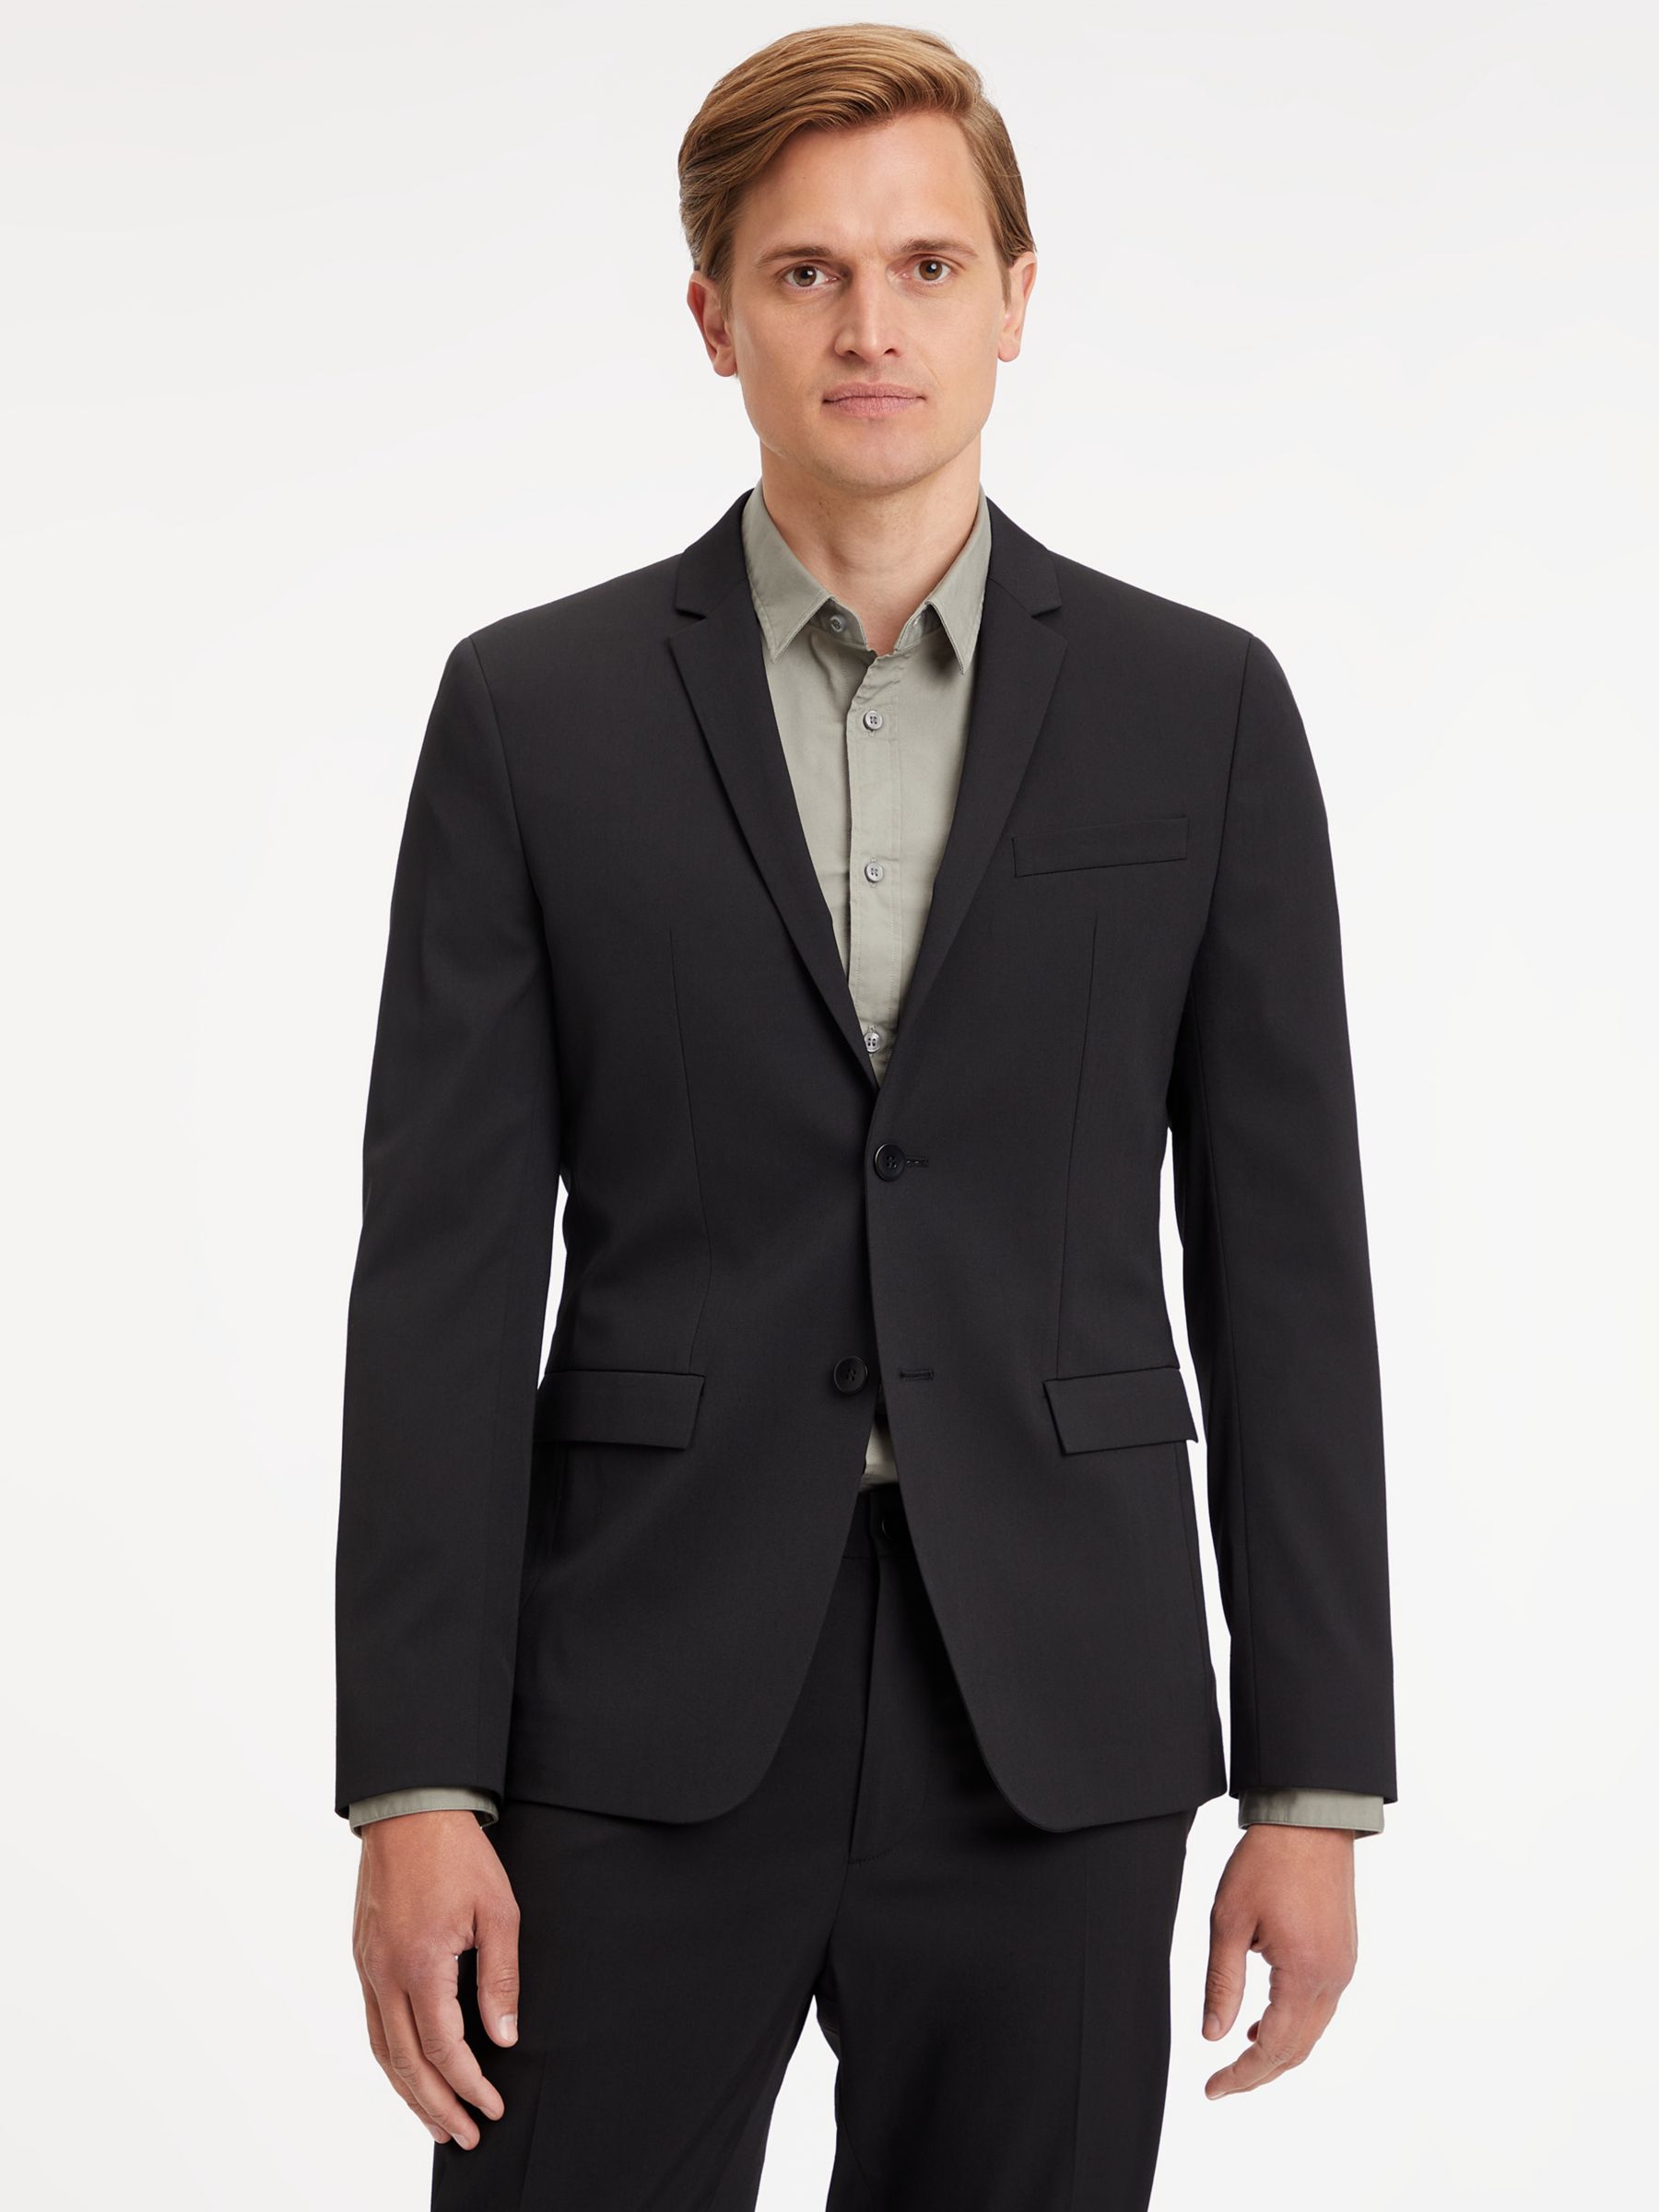 Calvin Klein Men's Slim-Fit Infinite Stretch Black Tuxedo Suit